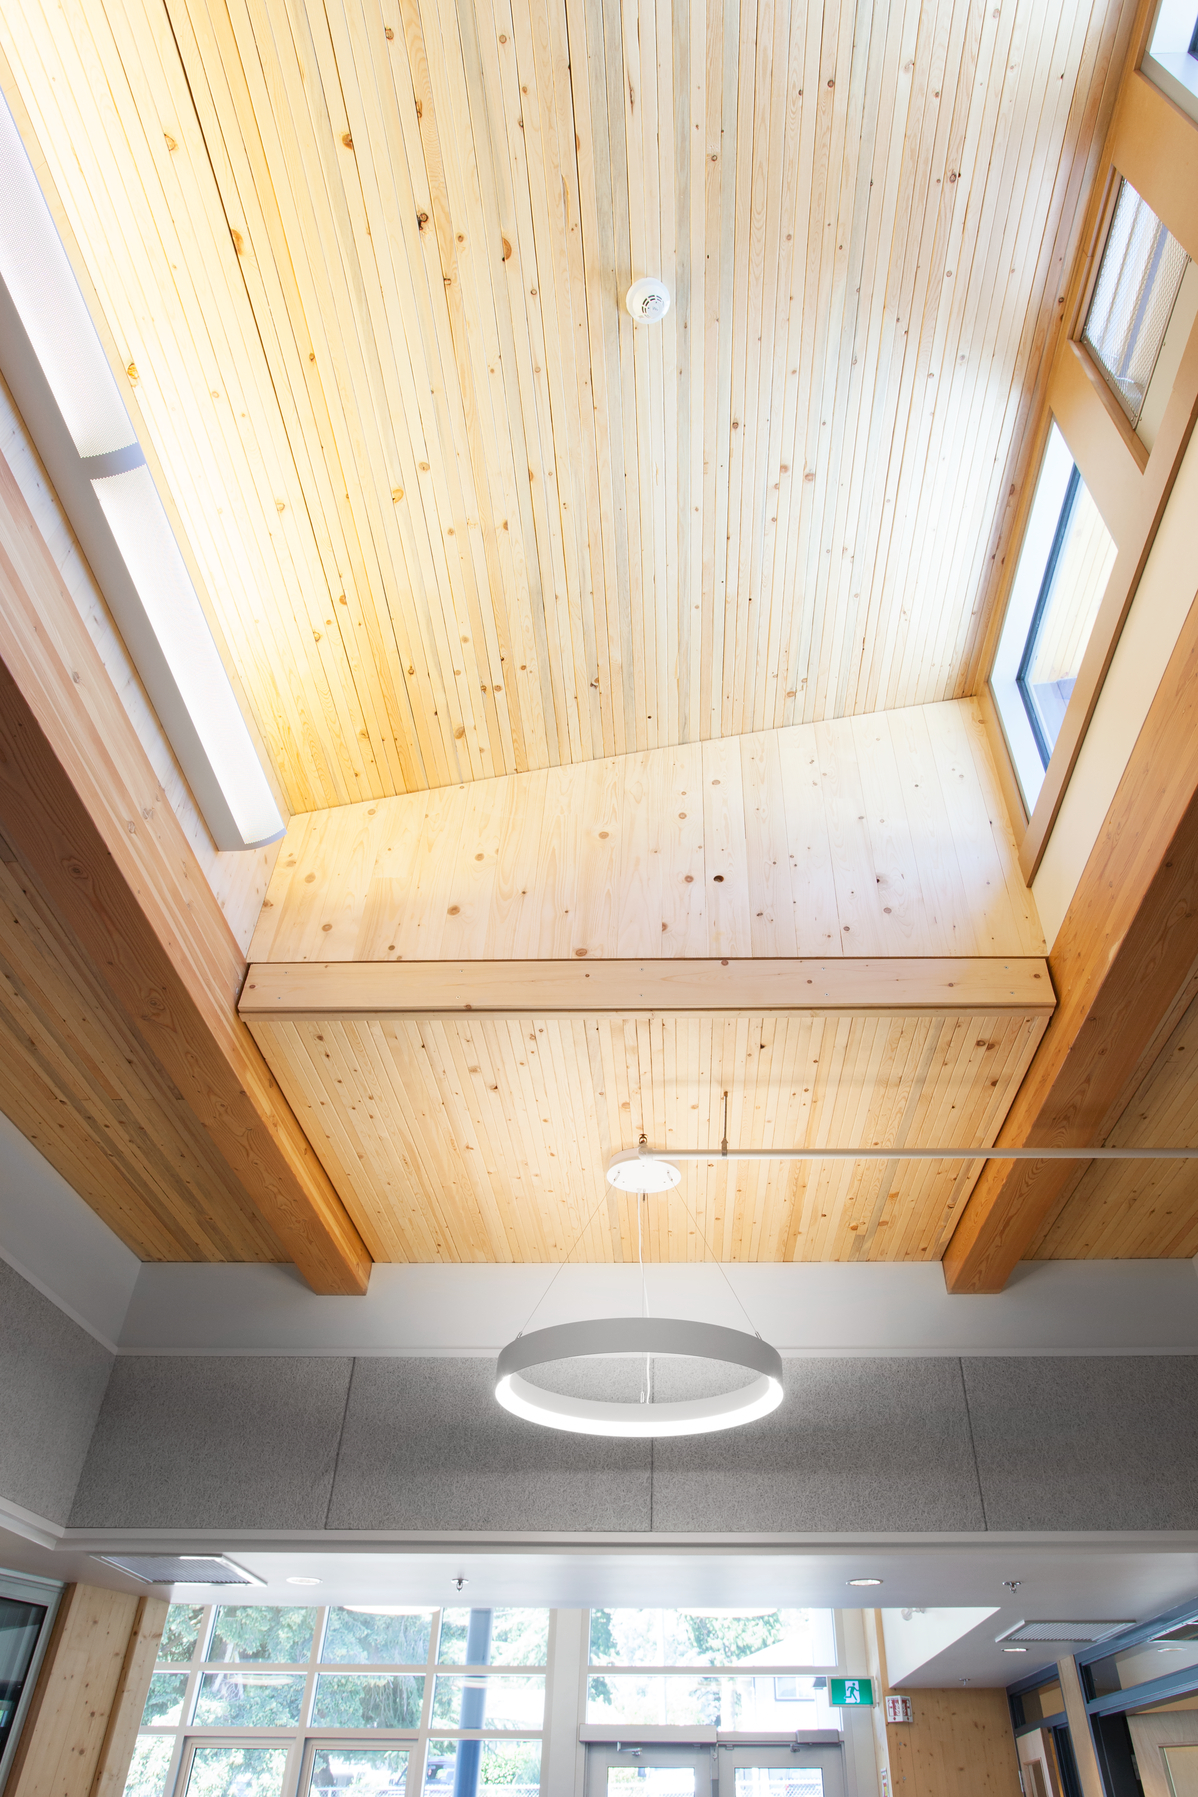 科多瓦湾小学的室内日间向上视图，展示了由钉层木材(NLT)和交叉层压木材(CLT)组成的预制镶板木材建筑系统的天花板。